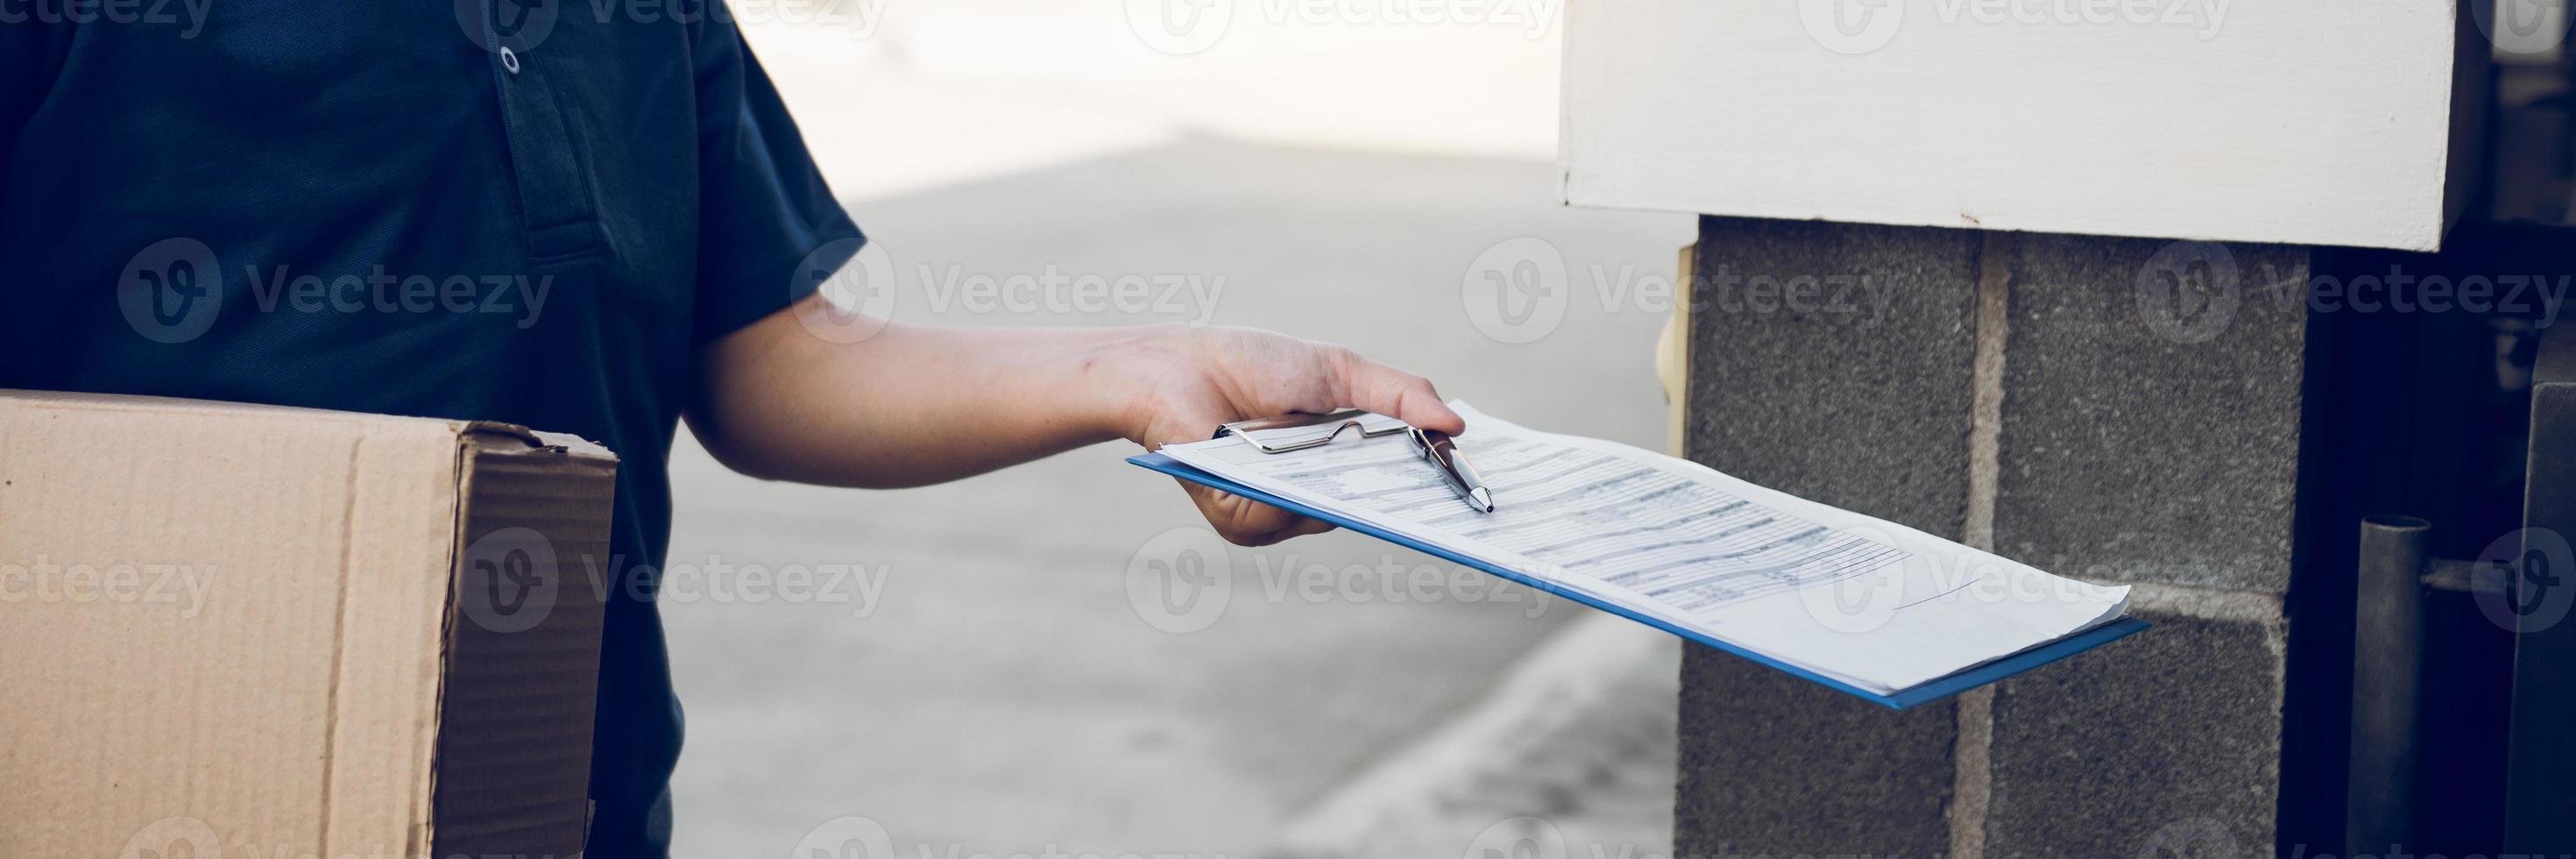 ung asiatisk man ler medan han levererar en kartong till kvinnan som håller dokumentet för att underteckna signatur. foto